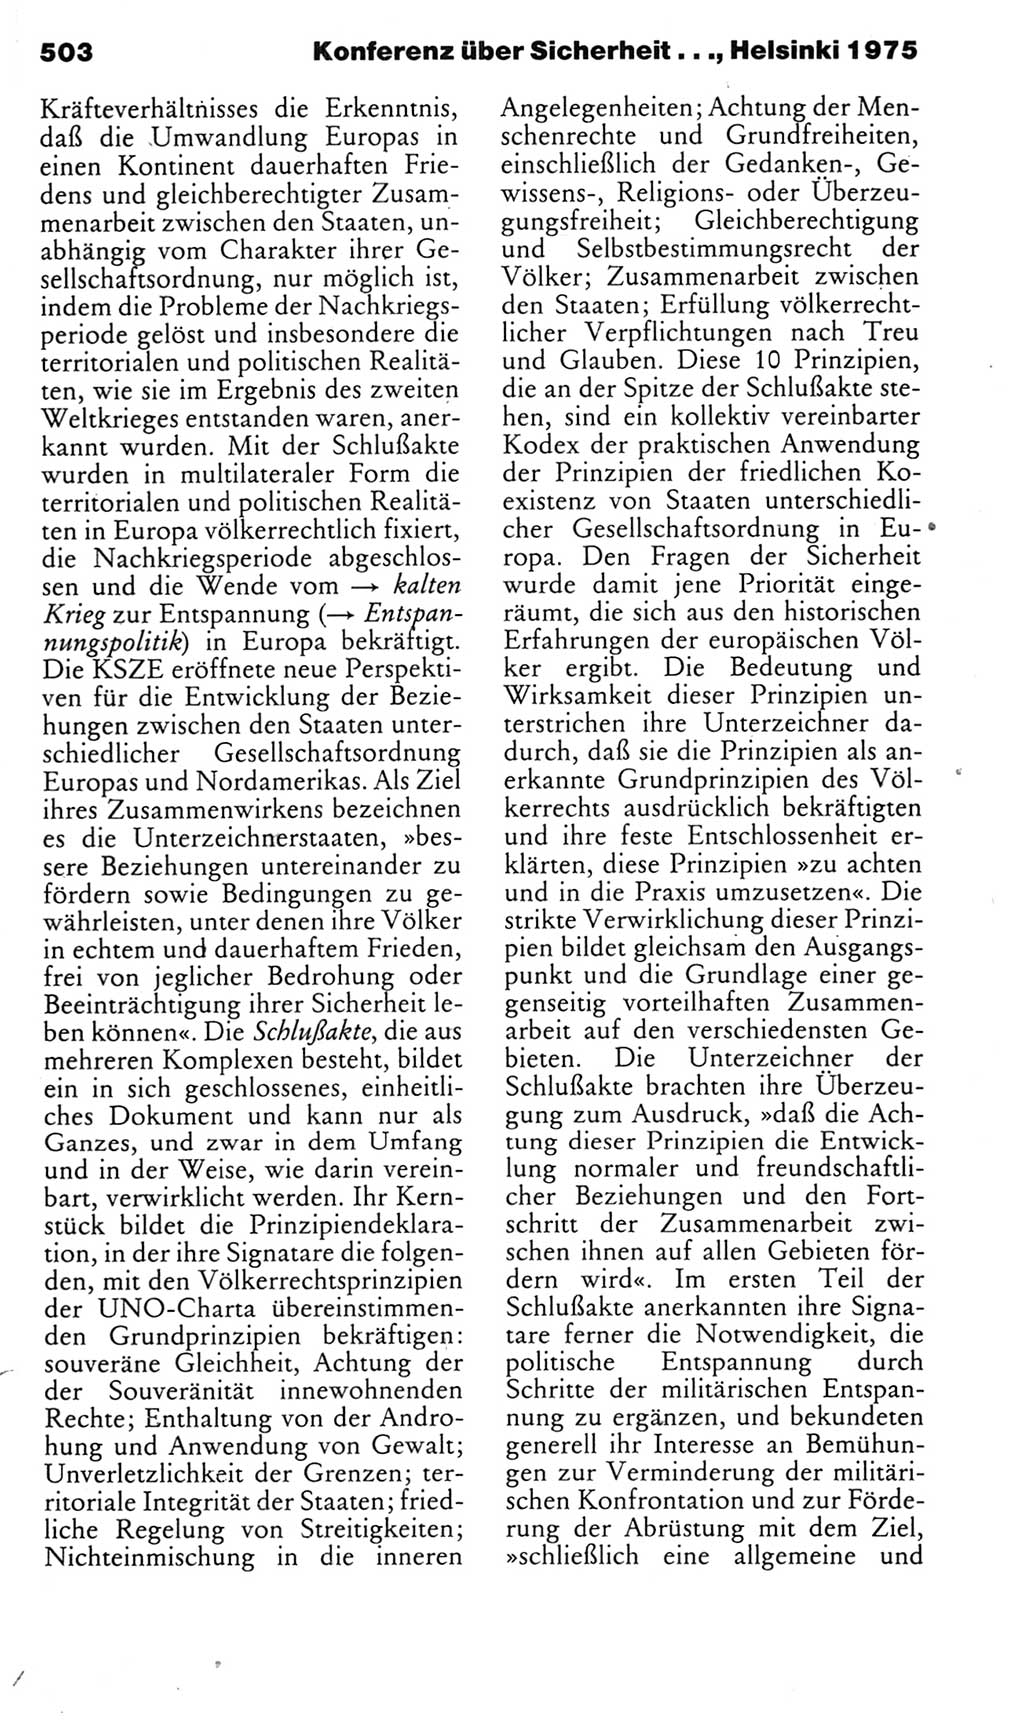 Kleines politisches Wörterbuch [Deutsche Demokratische Republik (DDR)] 1985, Seite 503 (Kl. pol. Wb. DDR 1985, S. 503)